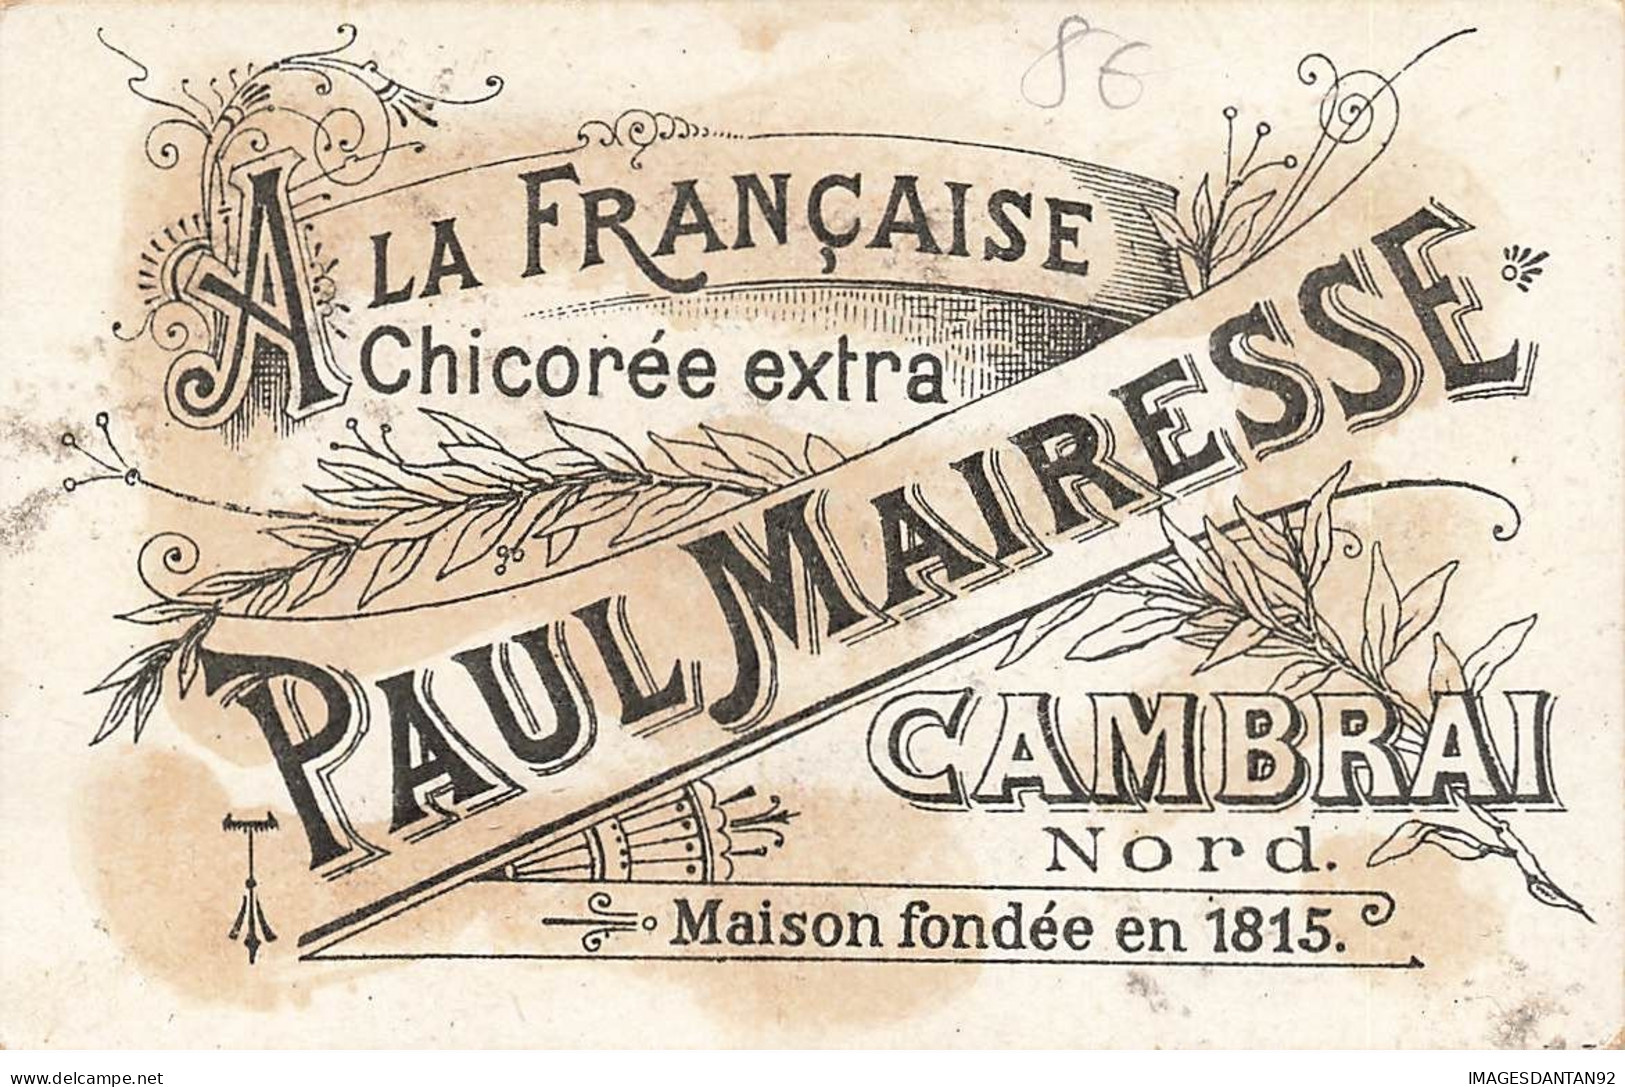 CAMBRAI A LA FRANCAISE PAUL MAIRESSE CHICOREE COUPLE SERVEUSE - Tè & Caffè